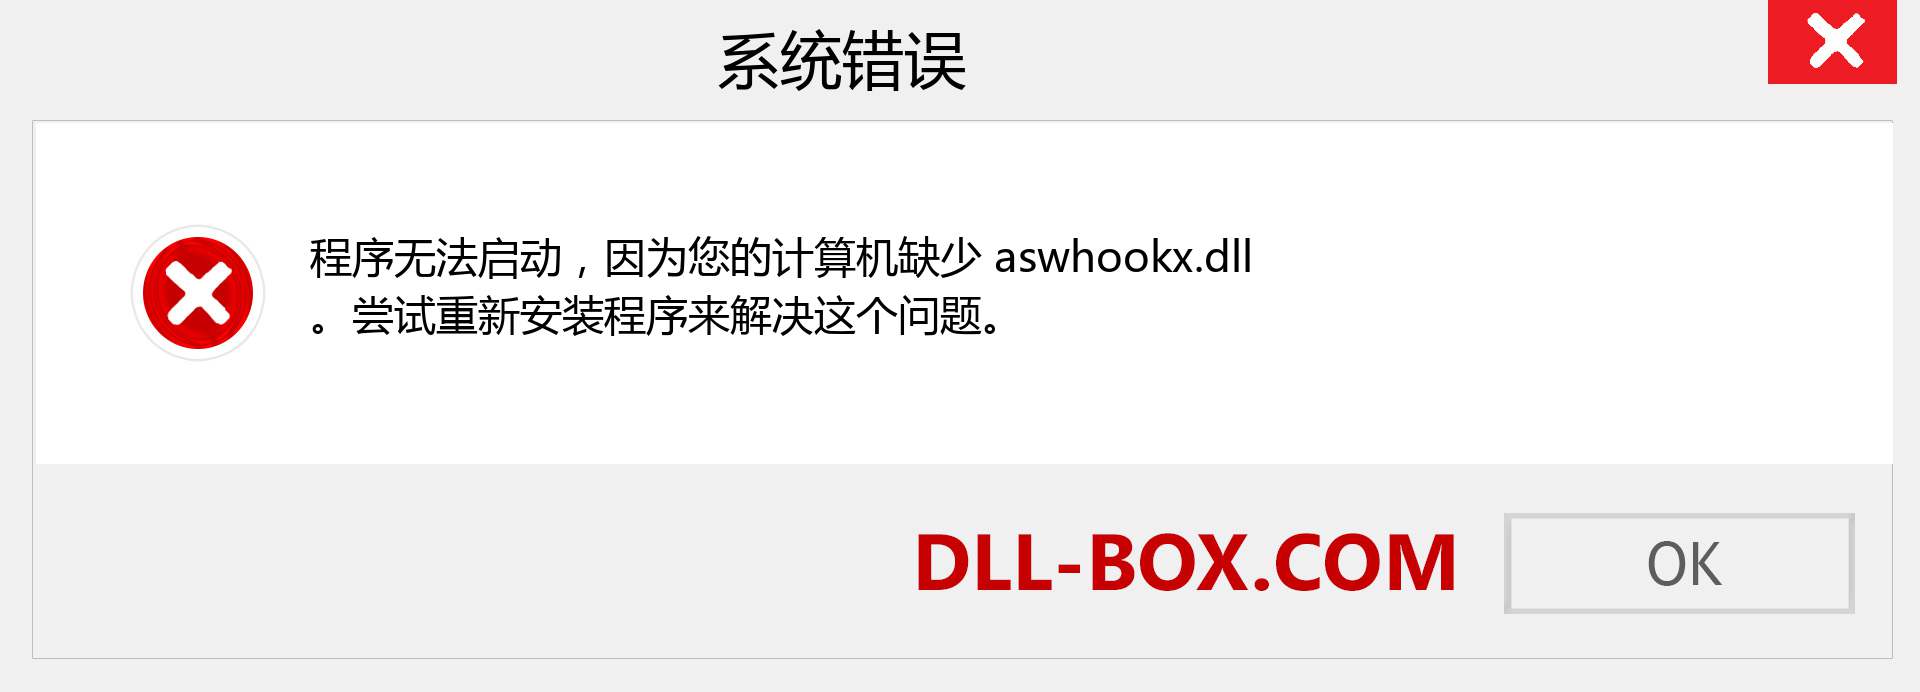 aswhookx.dll 文件丢失？。 适用于 Windows 7、8、10 的下载 - 修复 Windows、照片、图像上的 aswhookx dll 丢失错误